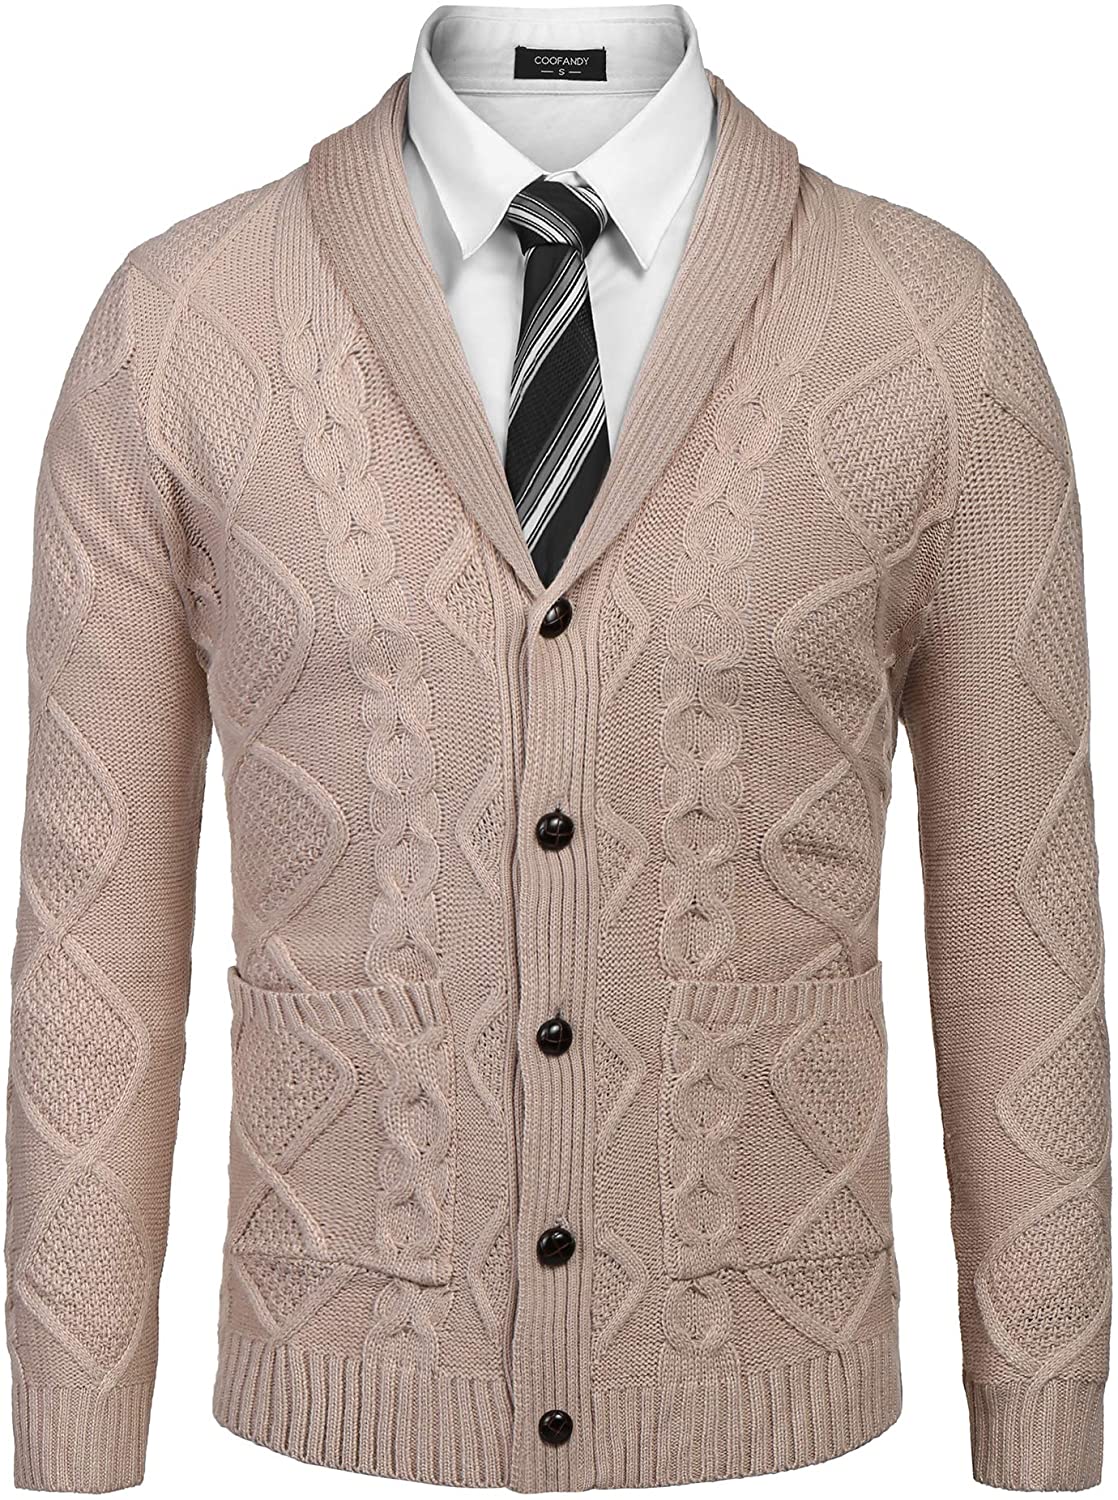 COOFANDY Herren Schalkragen Cardigan Sweater Slim Fit Merish Aran Button Down Zopfstrickpullover mit Taschen